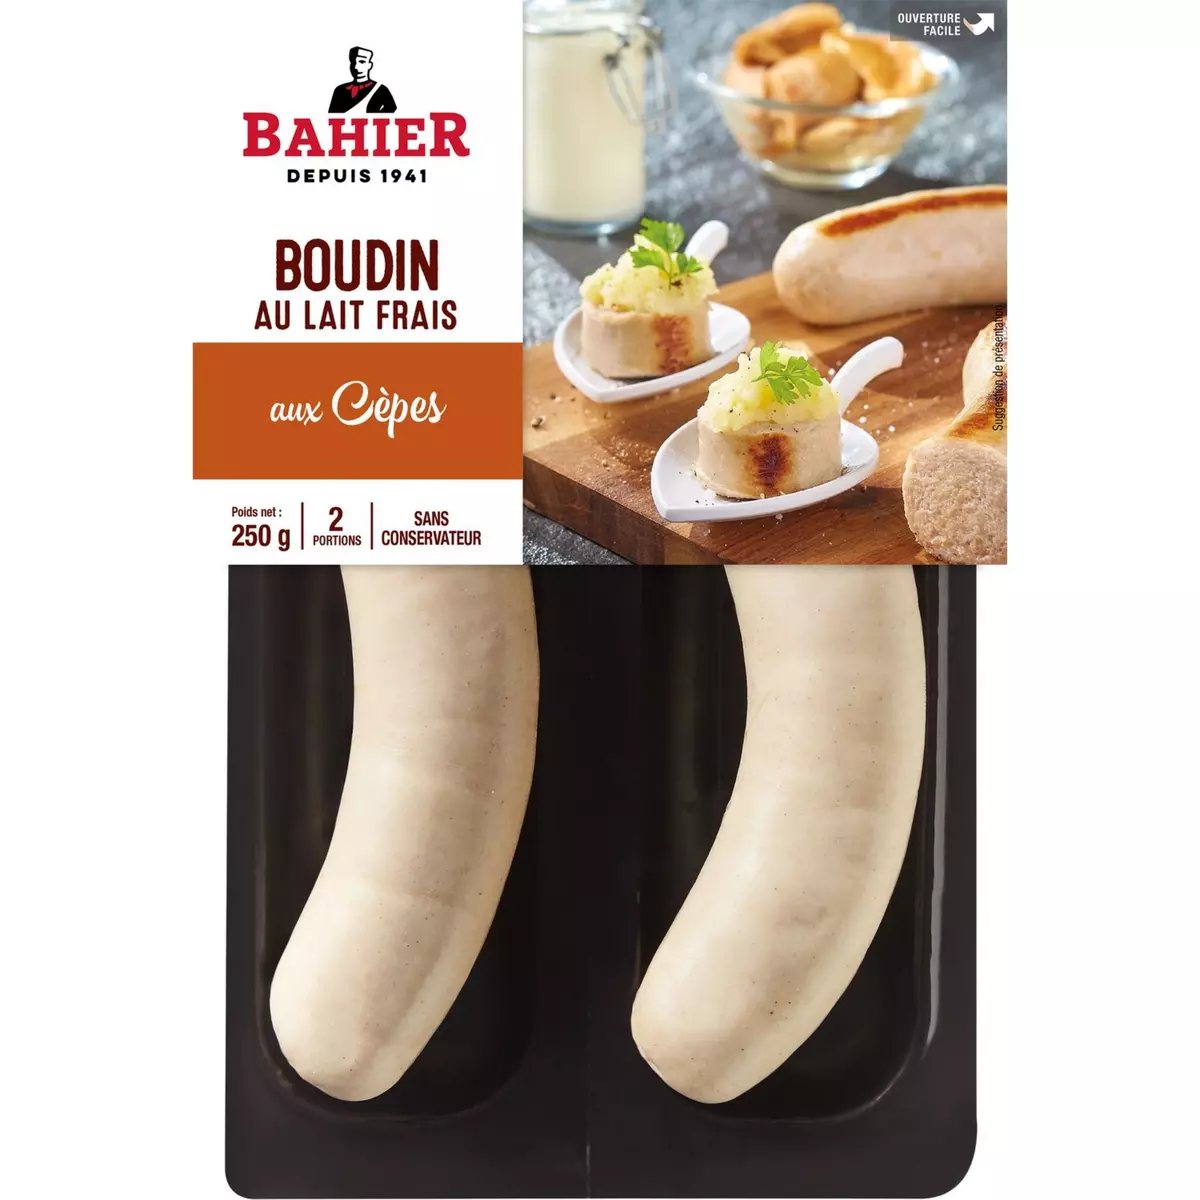 BAHIER Boudin blanc aux cêpes 2x125g